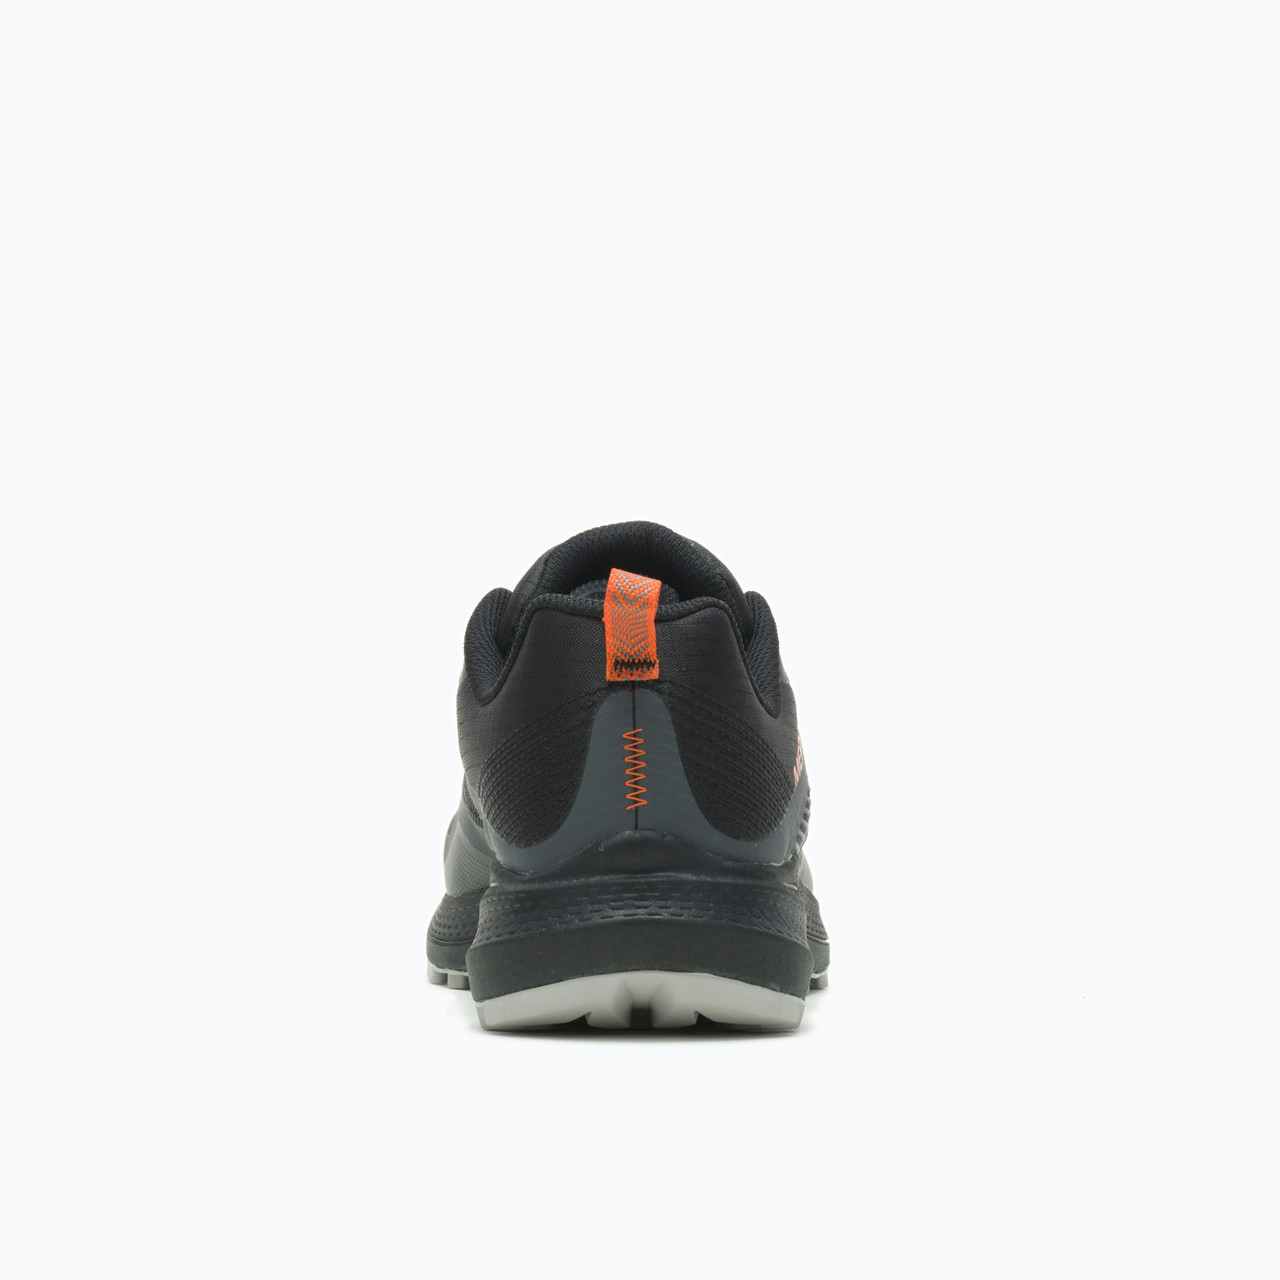 Chaussures de randonnée légère MQM 3 Noir/Exubérance